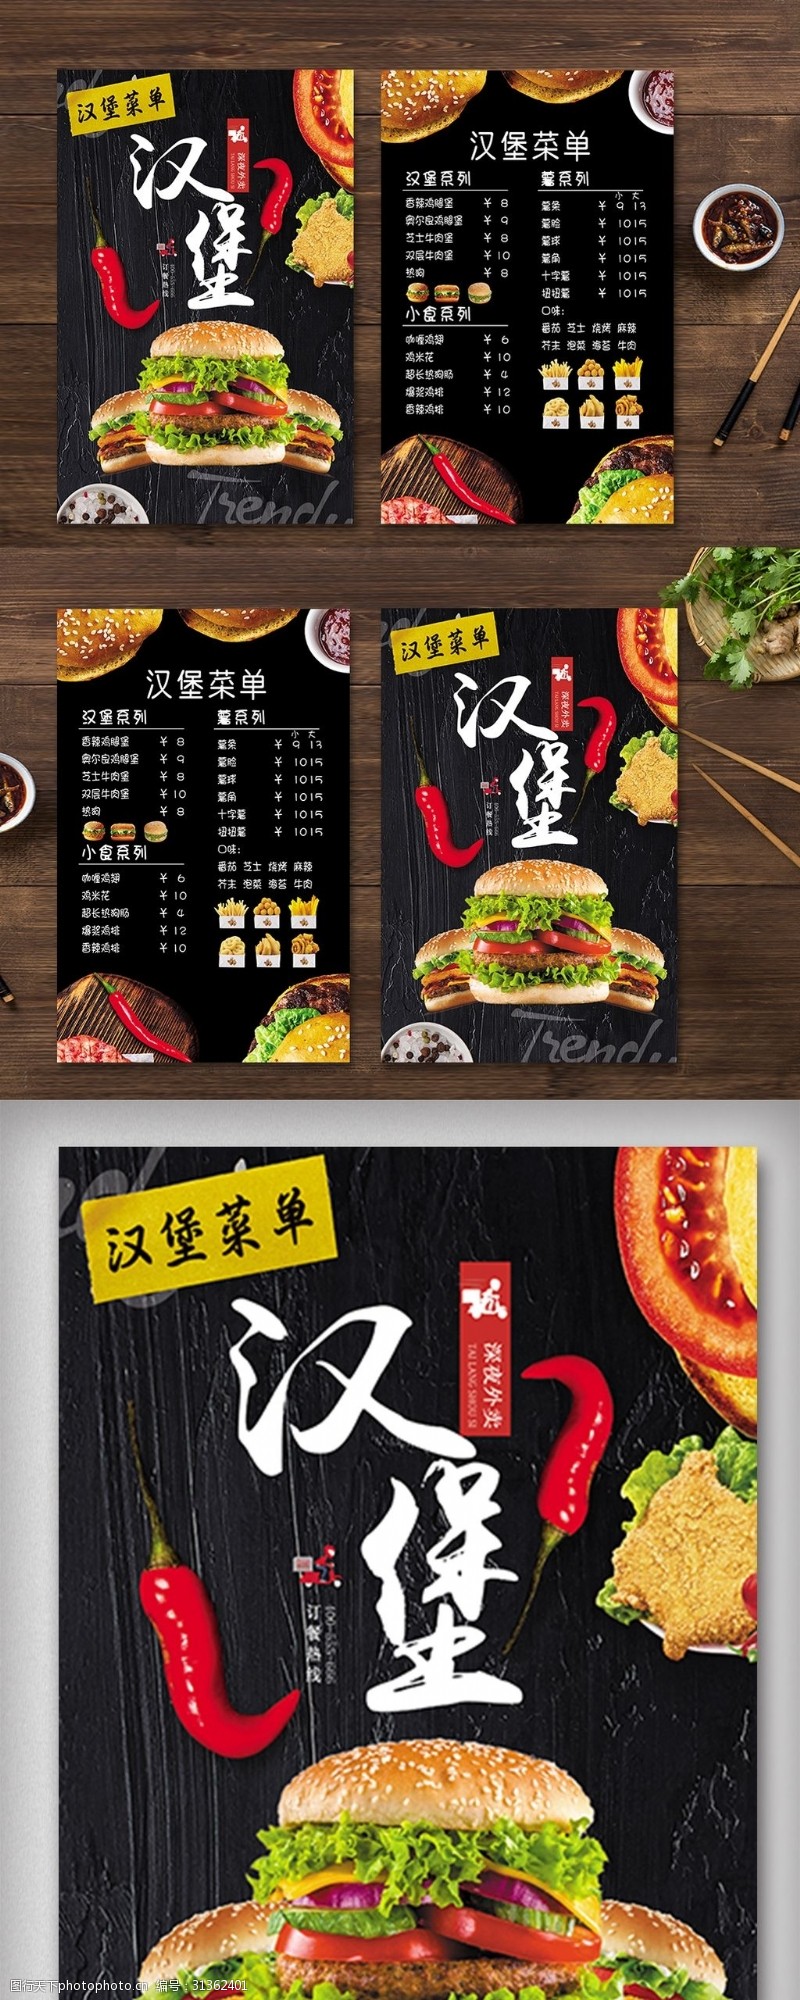 米酒背景美食汉堡菜单菜谱宣传单